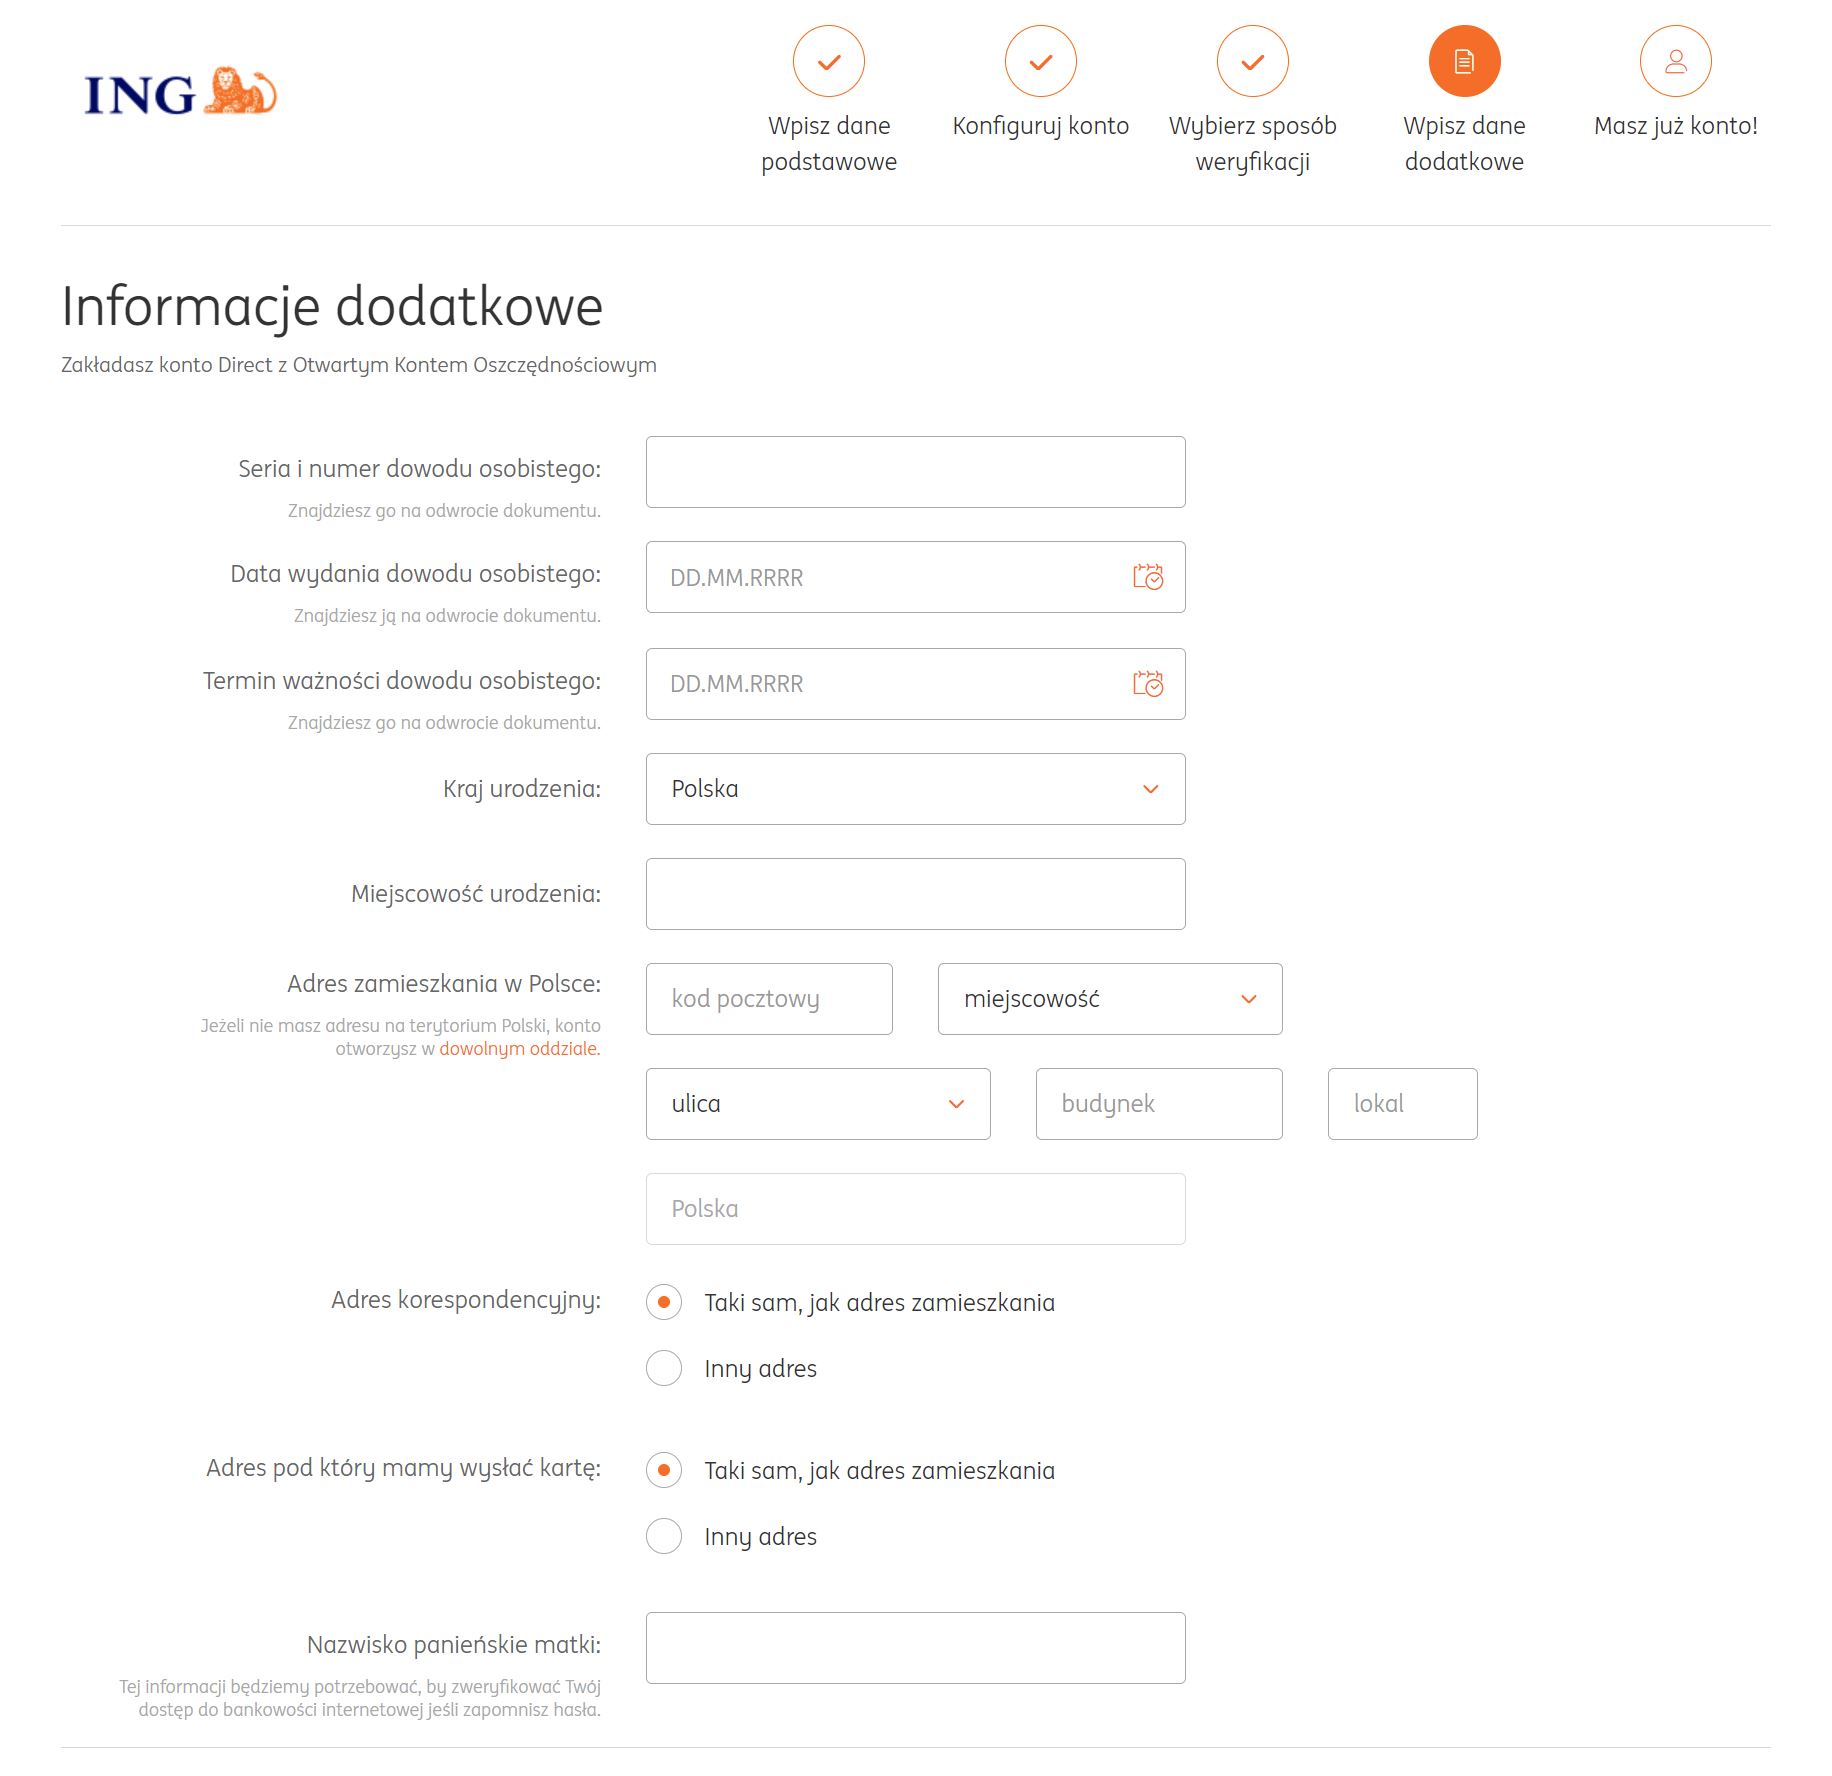 obrazek przedstawia formulaz banku ING: uzupełnij dodatkowe informacje